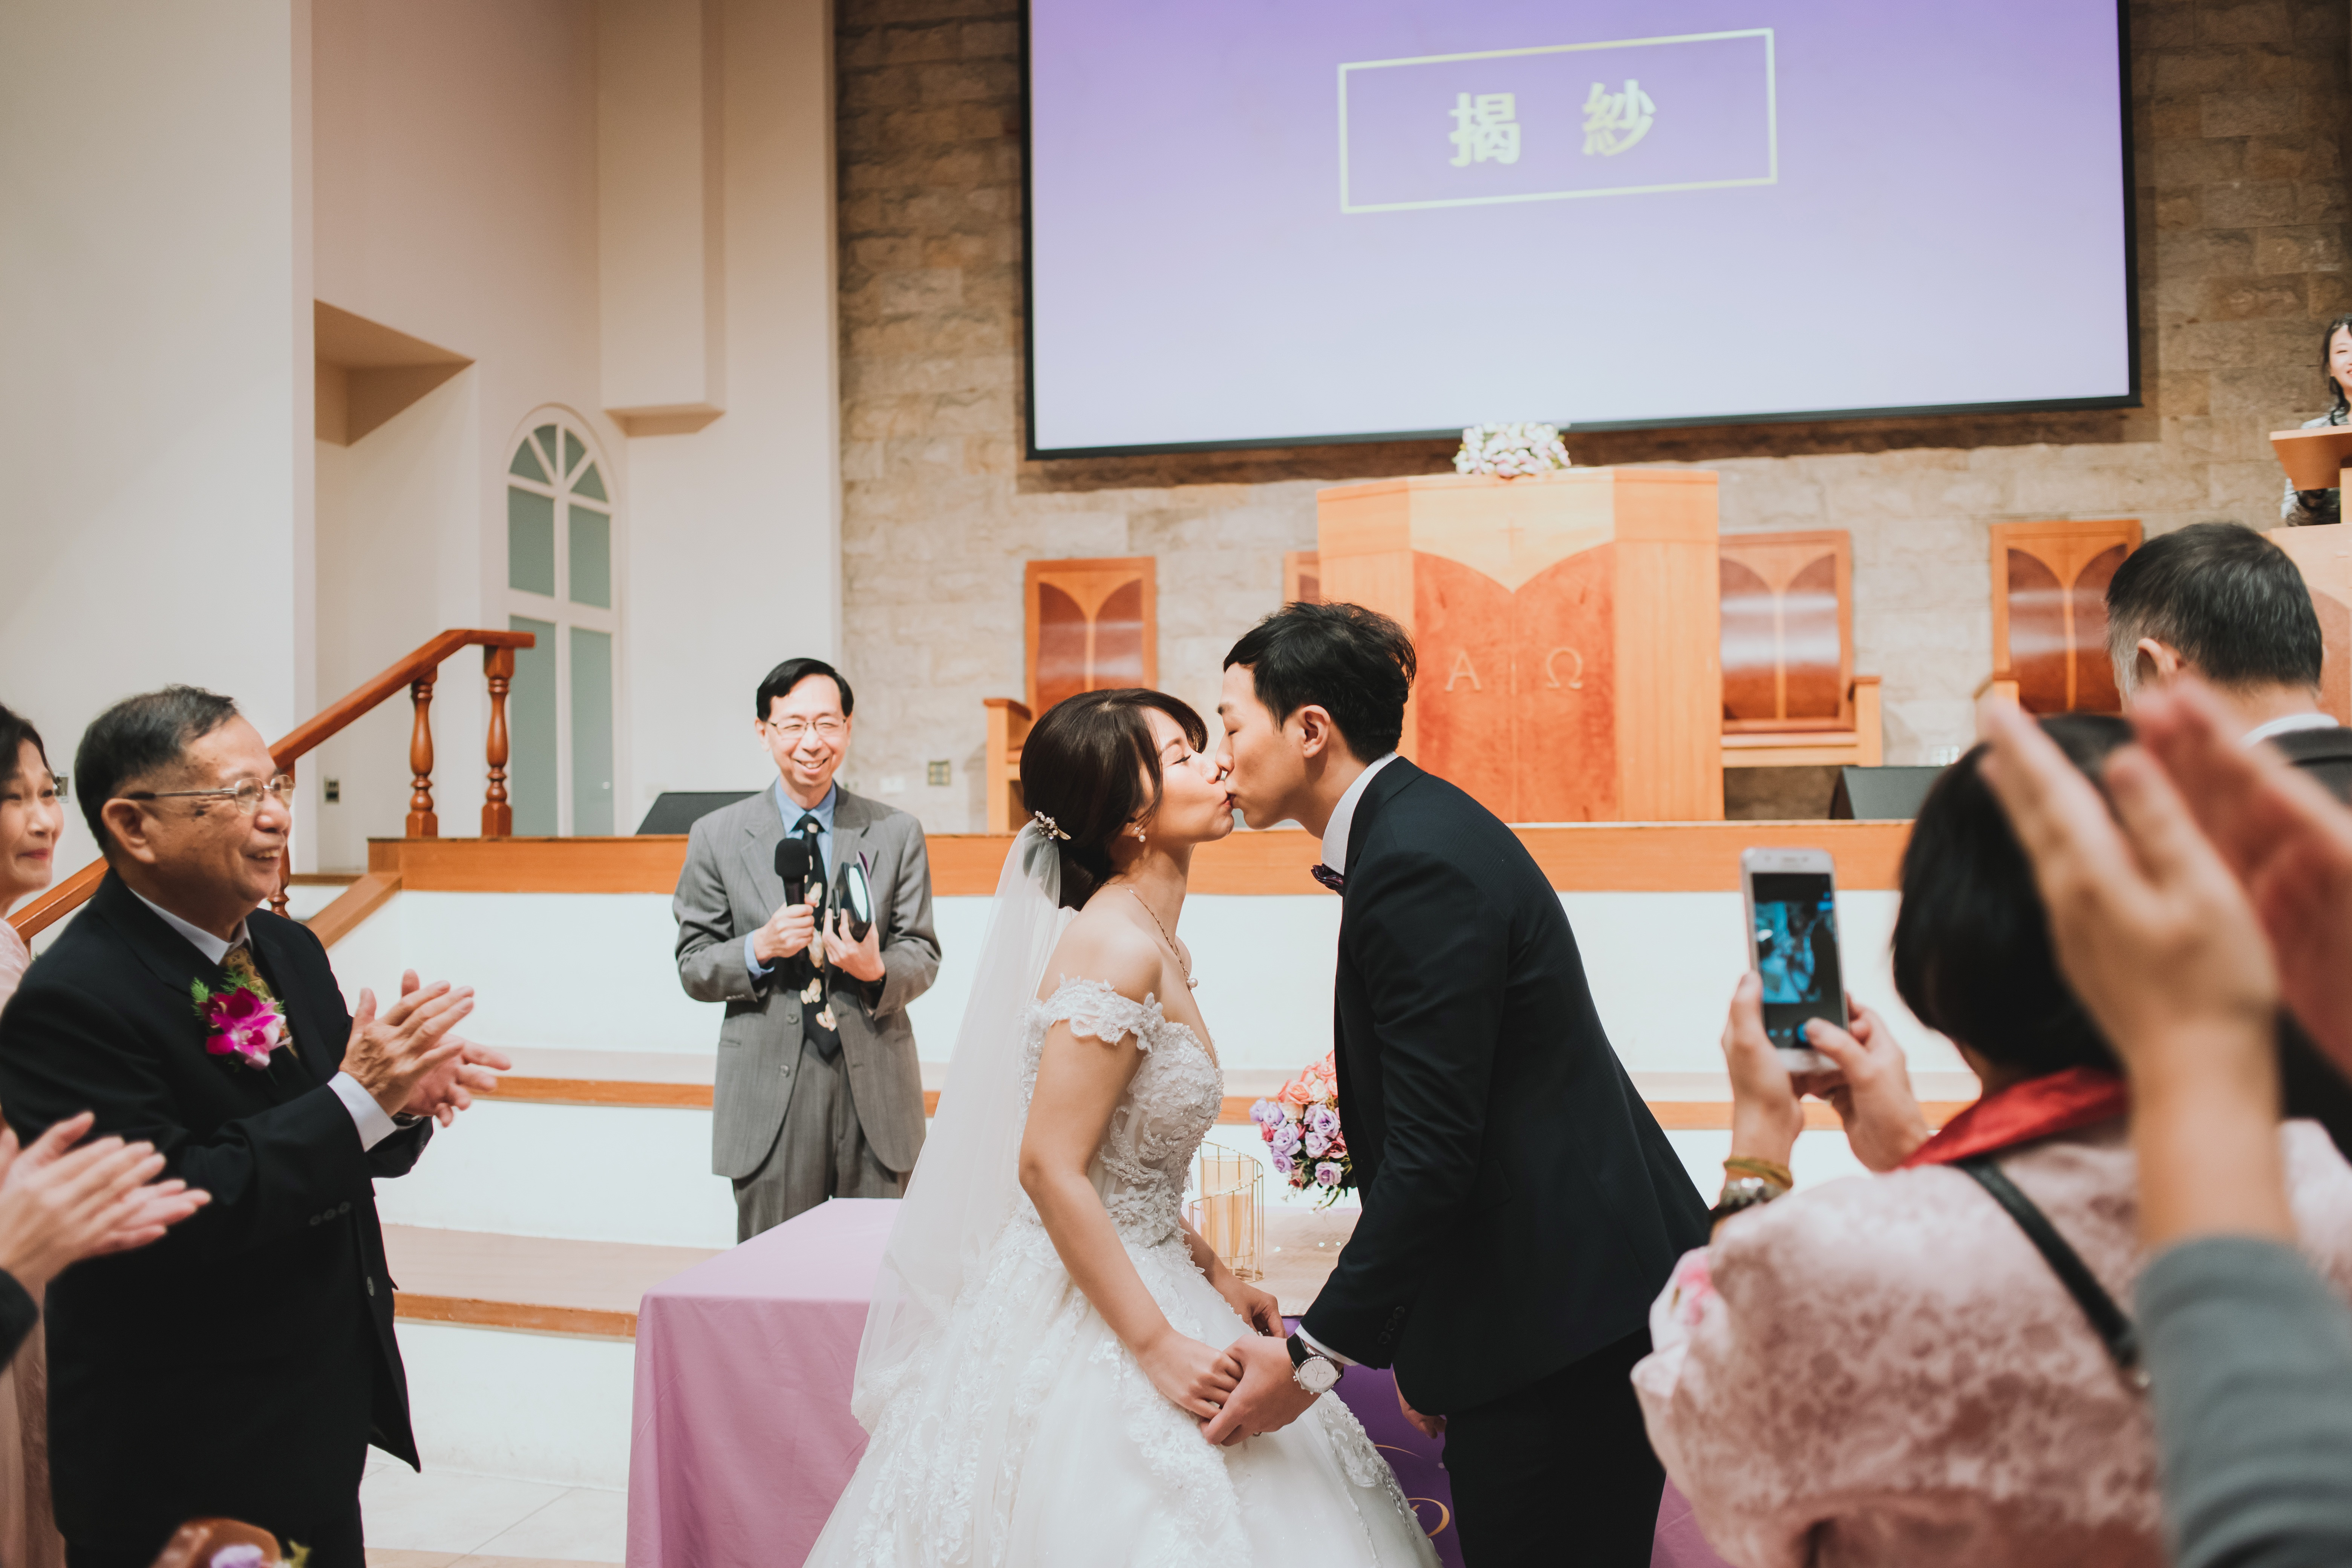 【婚禮攝影】揭紗結婚誓言與交換婚戒